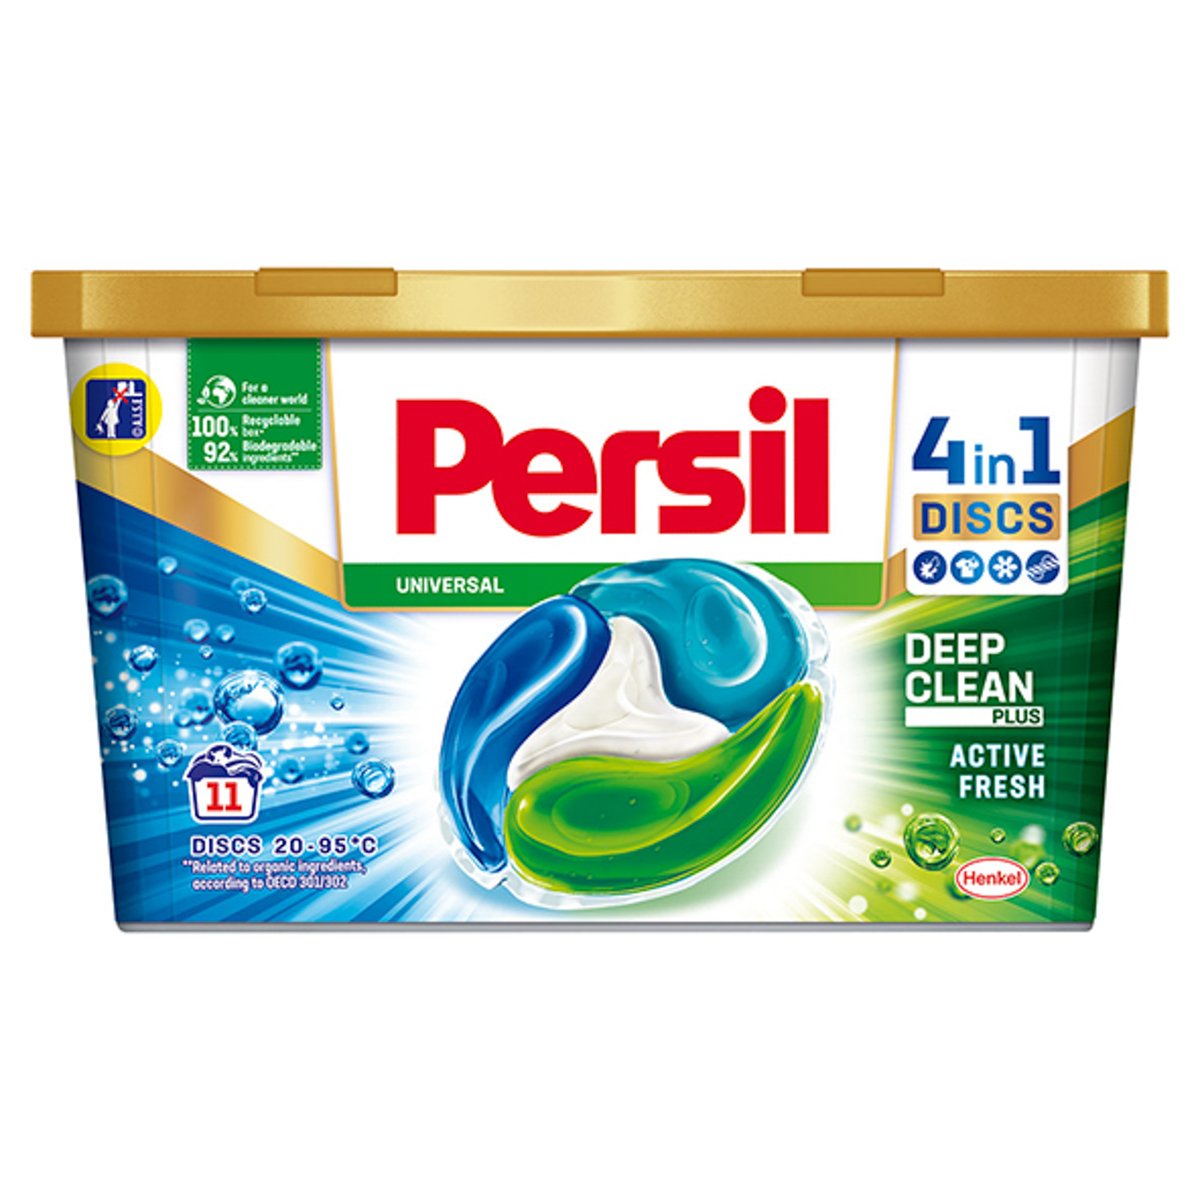 Persil Disc 4in1 Liquid Detergent Regular 2 x 11pcs